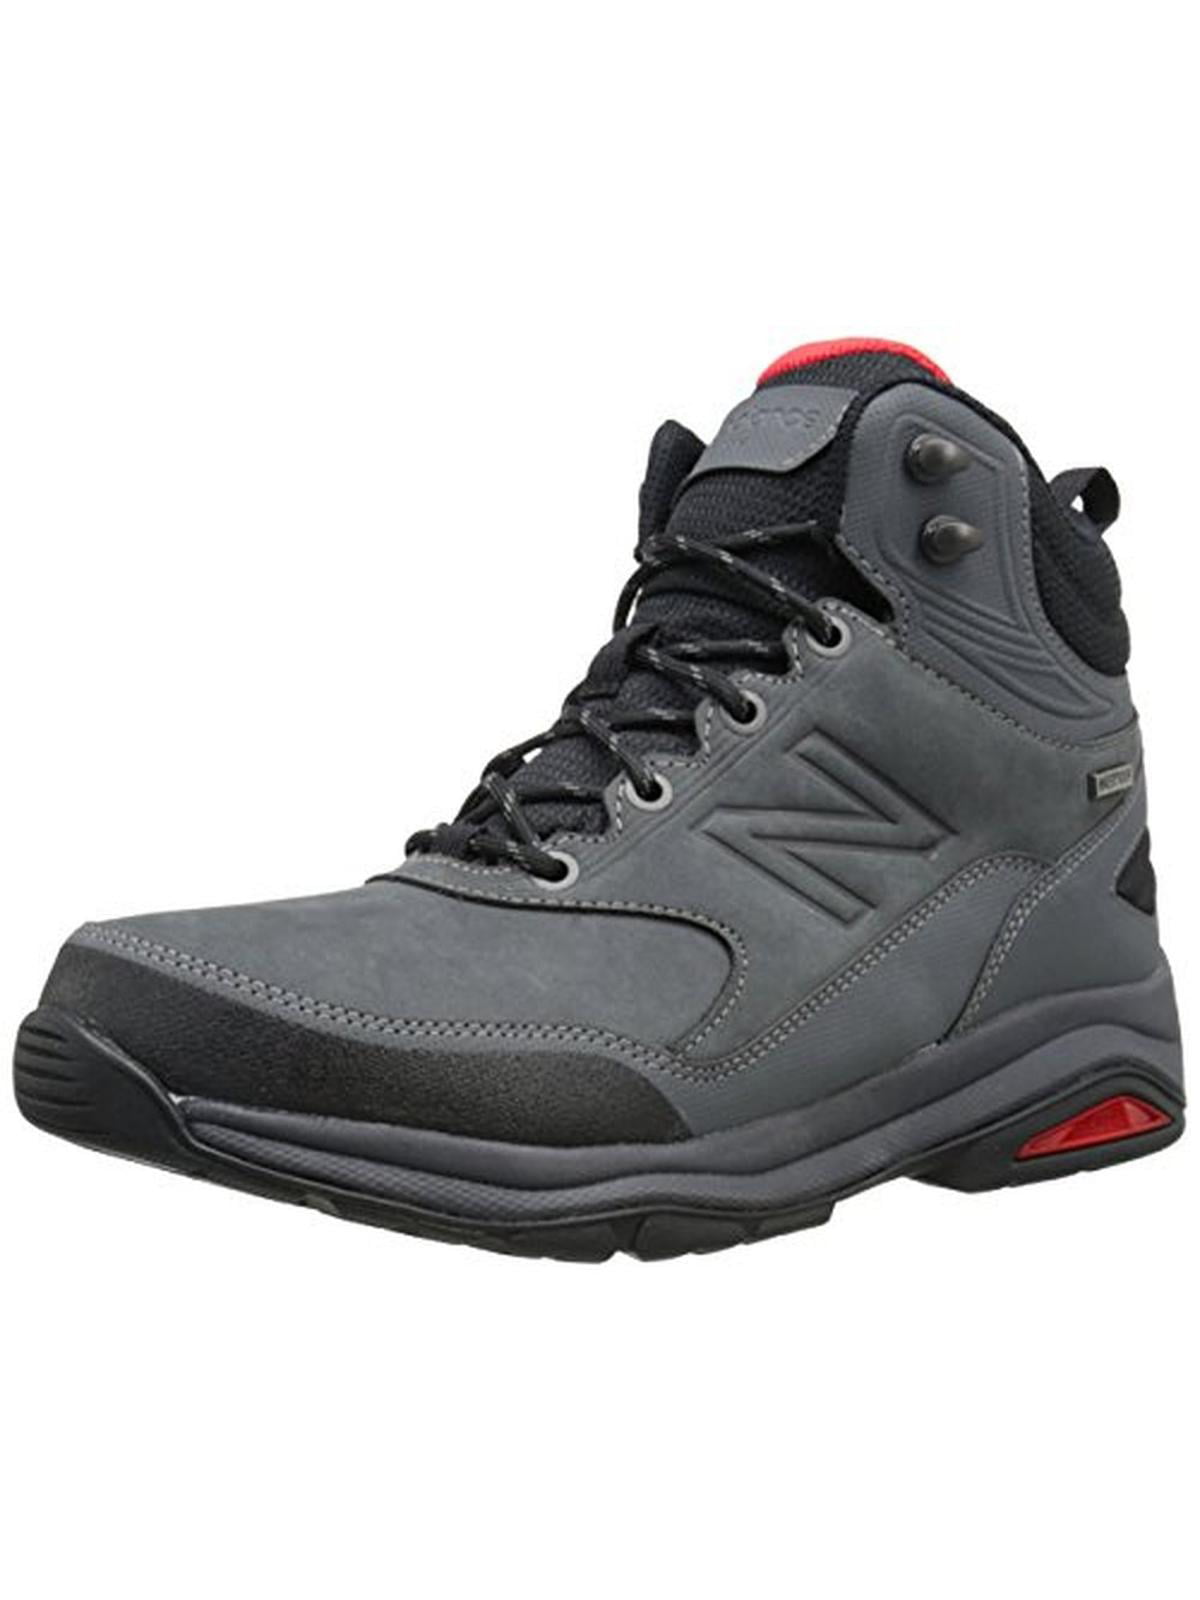 new balance waterproof hiking boots